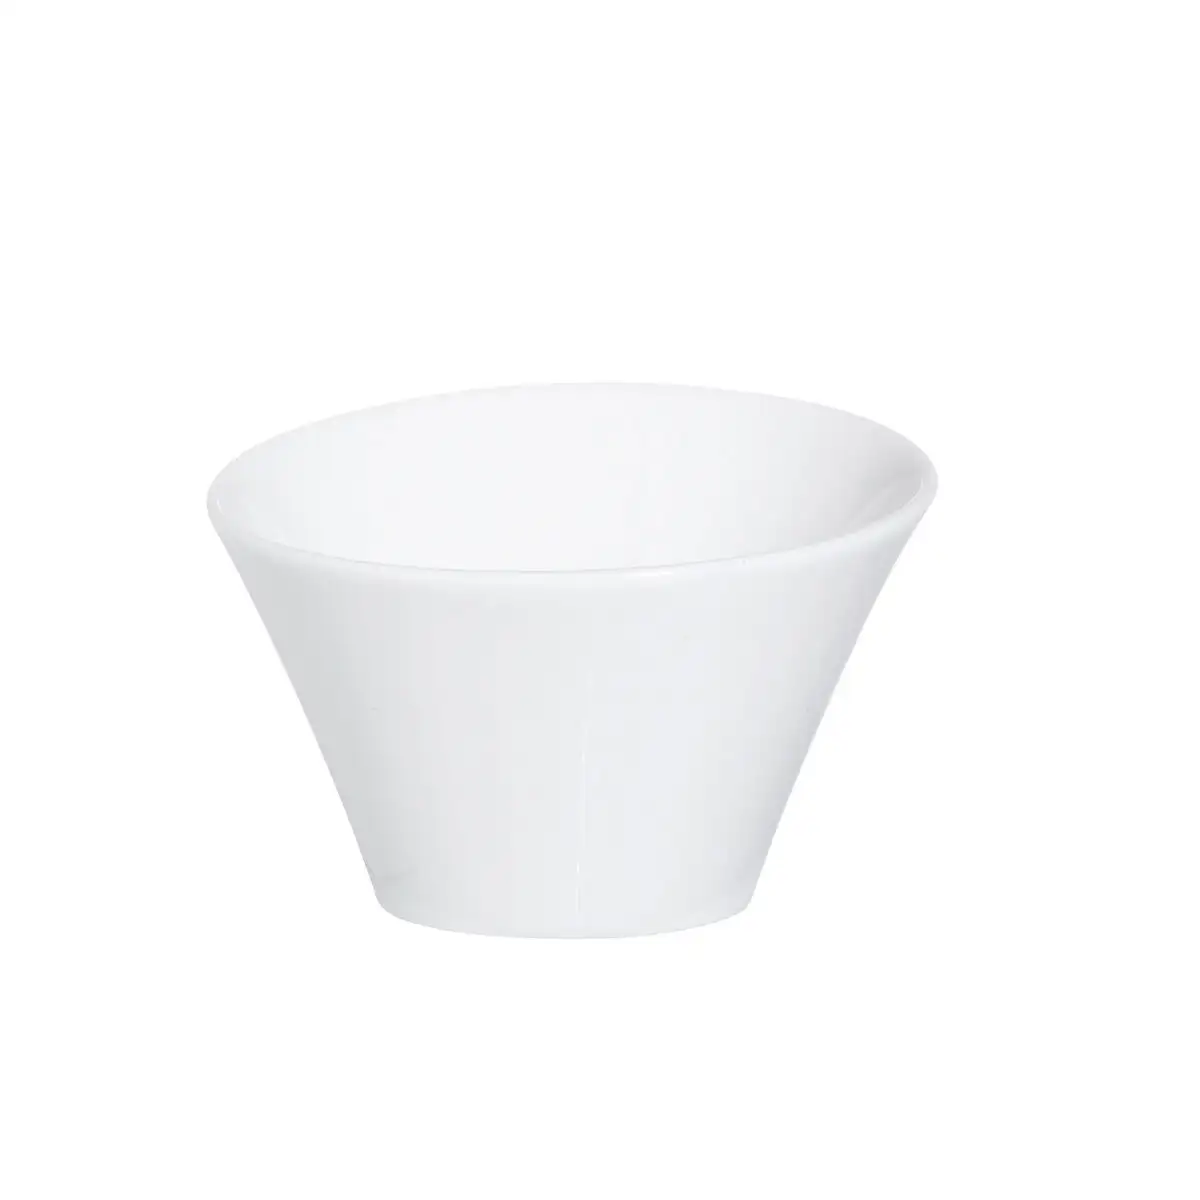 Set de bols arcoroc appetizer ceramique blanc 9 5 cm 6 unites _3628. DIAYTAR SENEGAL - Votre Source de Découvertes Shopping. Naviguez à travers nos catégories et découvrez des articles qui vous surprendront et vous séduiront.